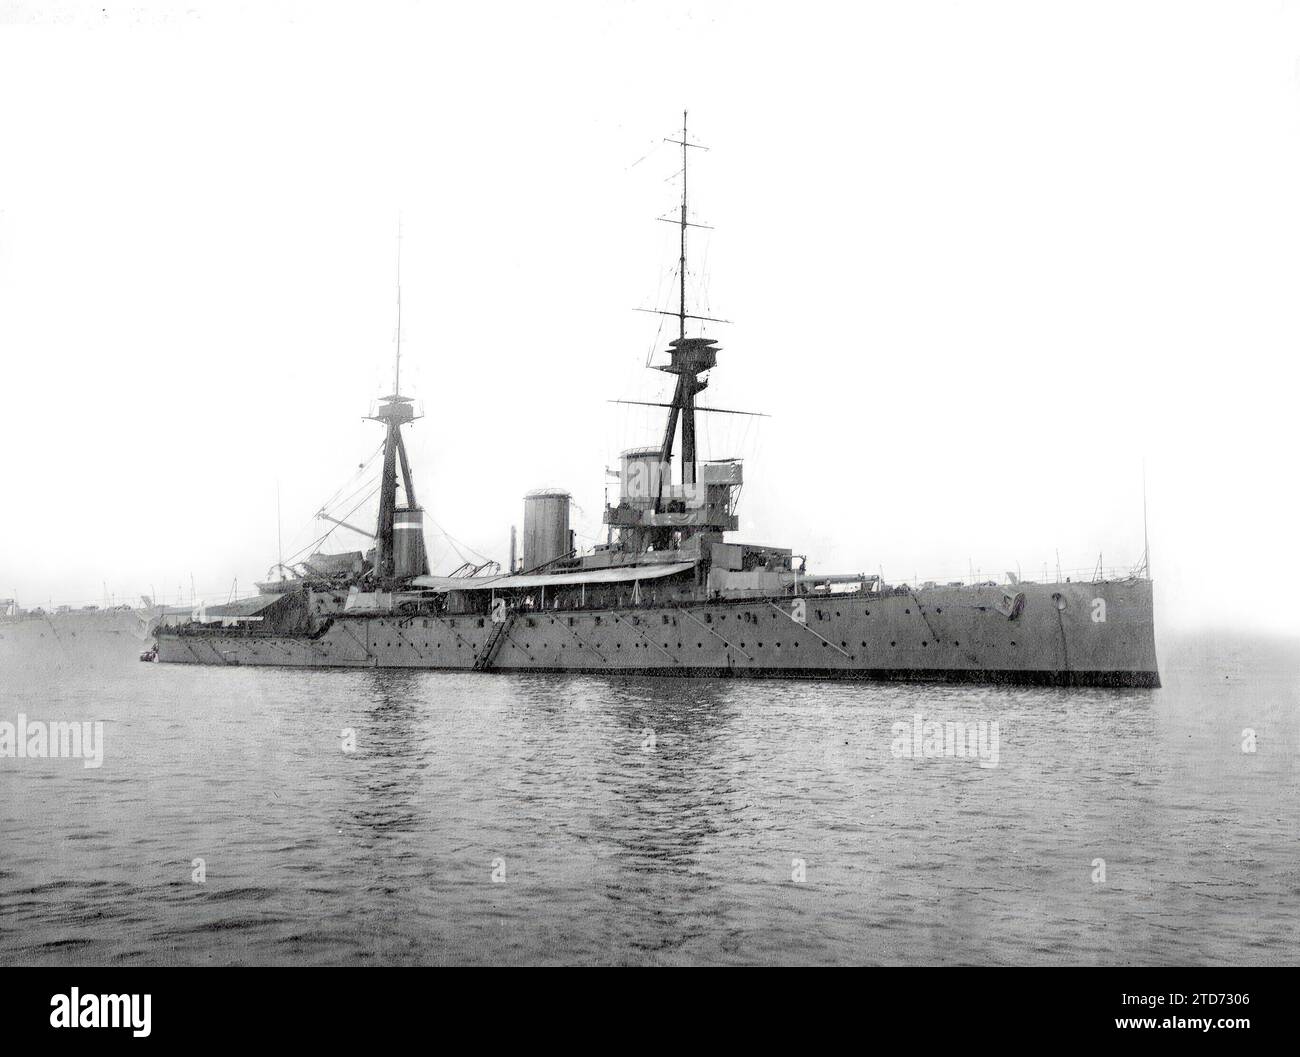 05/31/1916. Le croiseur anglais Indefatigable, coulé lors de la bataille navale du Jutland. Photo : Armando Gómez Lozoya - Date approximative. Crédit : Album / Archivo ABC Banque D'Images